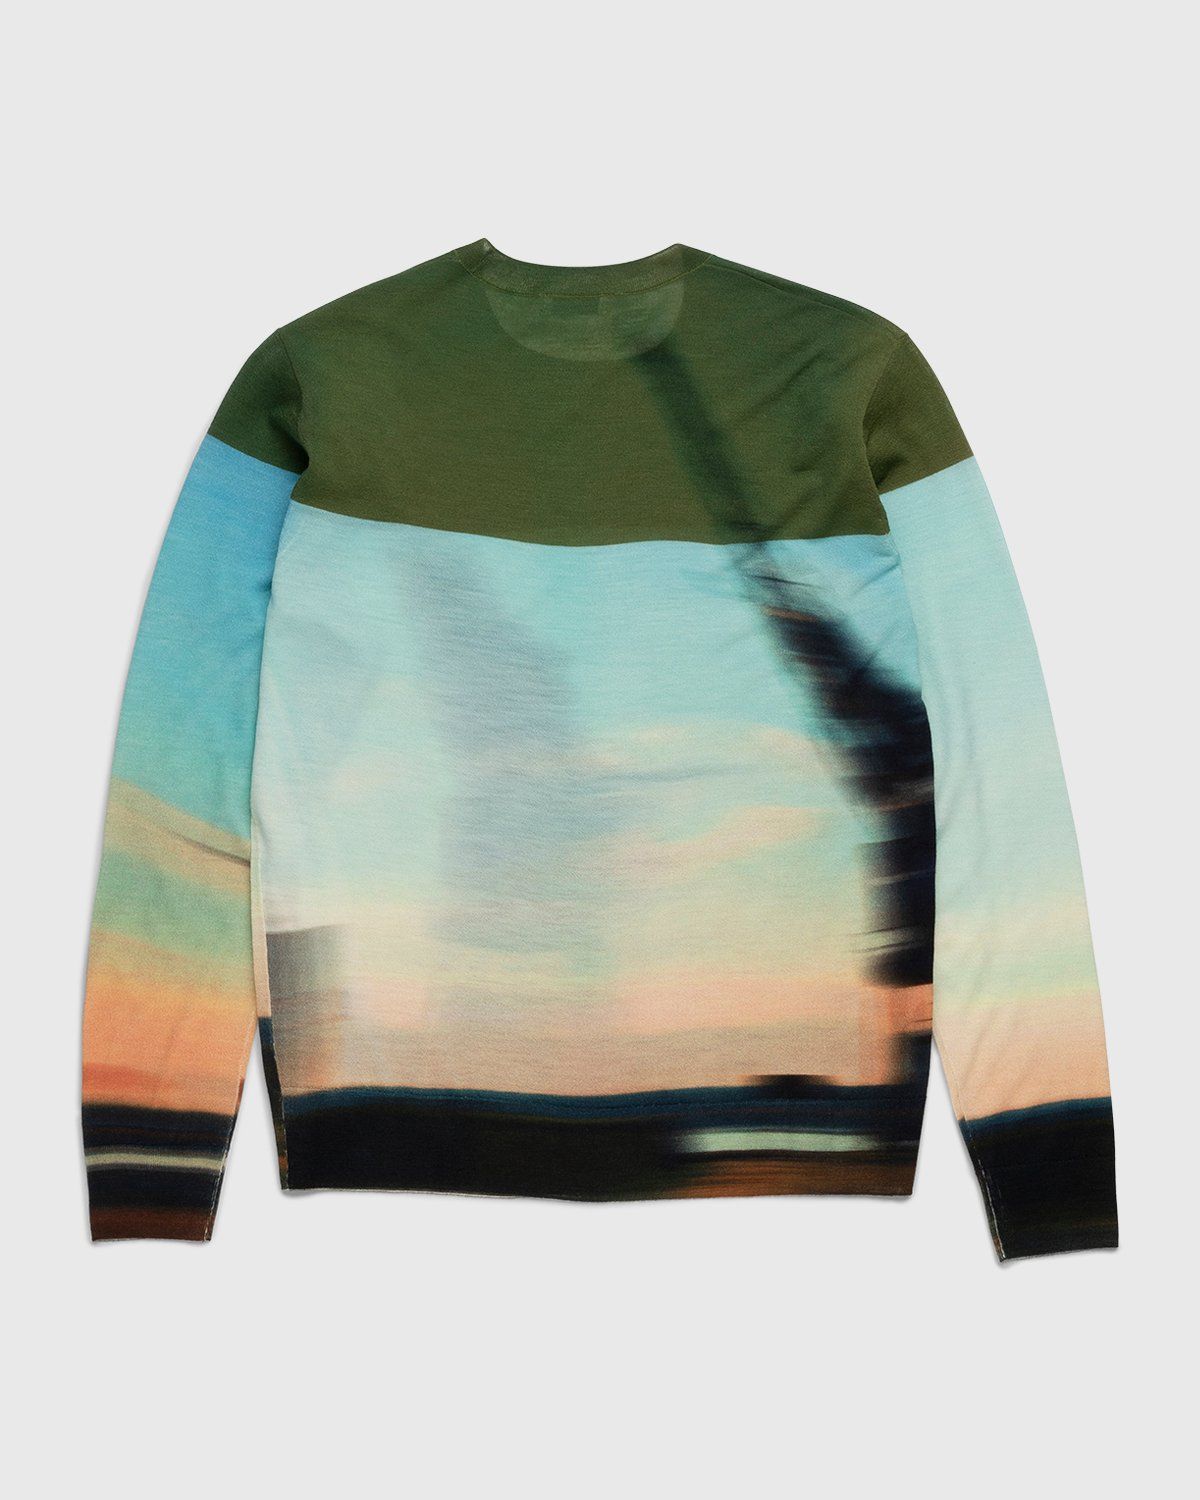 Dries van Noten – Jendrik Merino Sweater Dessin - Knitwear - Multi - Image 2